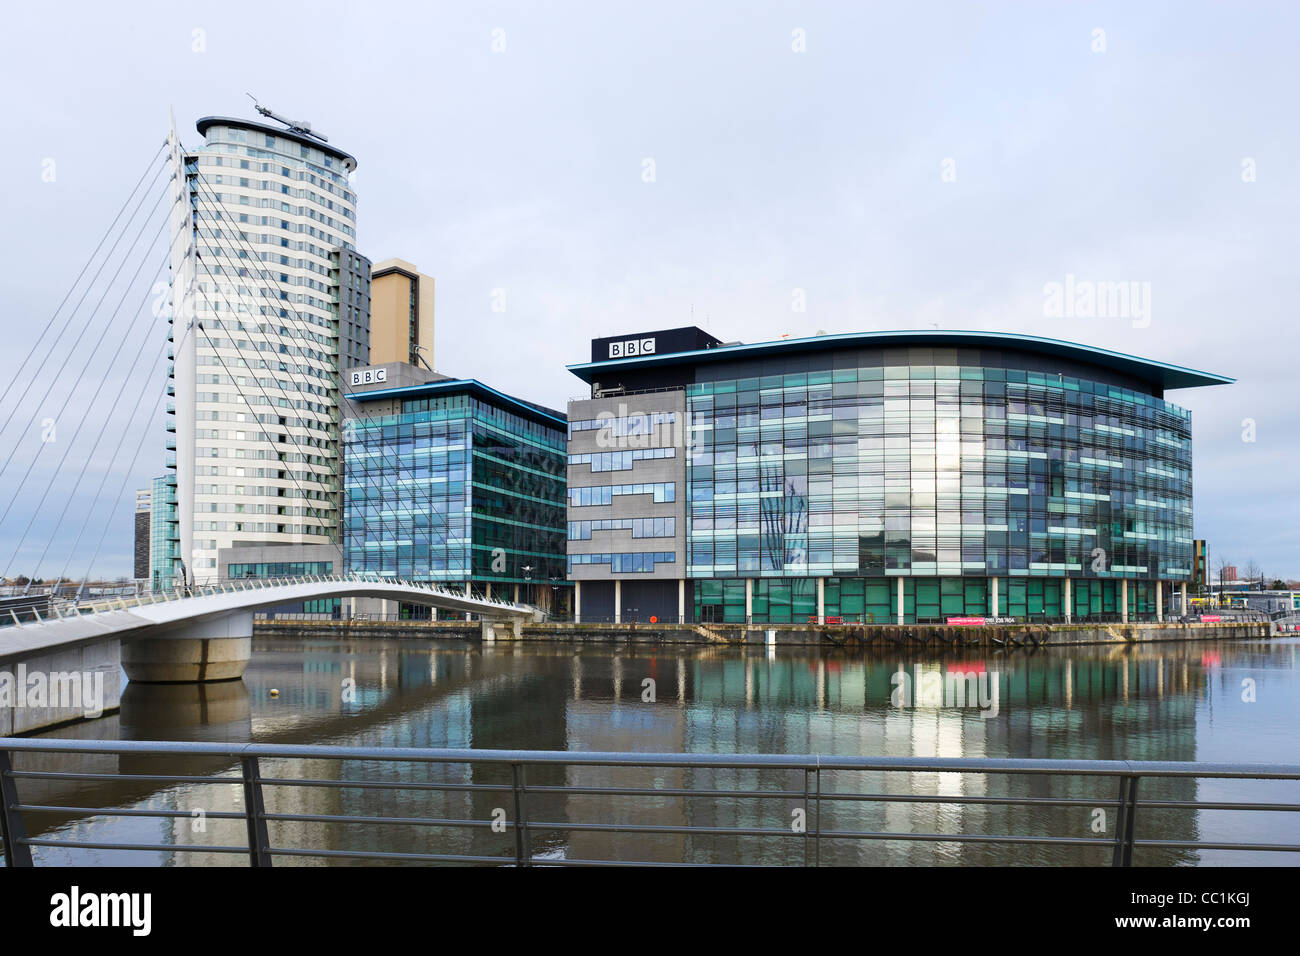 Dans les studios de la BBC avec MediaCityUK Quay House à droite et le pont vers la gauche, Salford Quays, Manchester, UK Banque D'Images